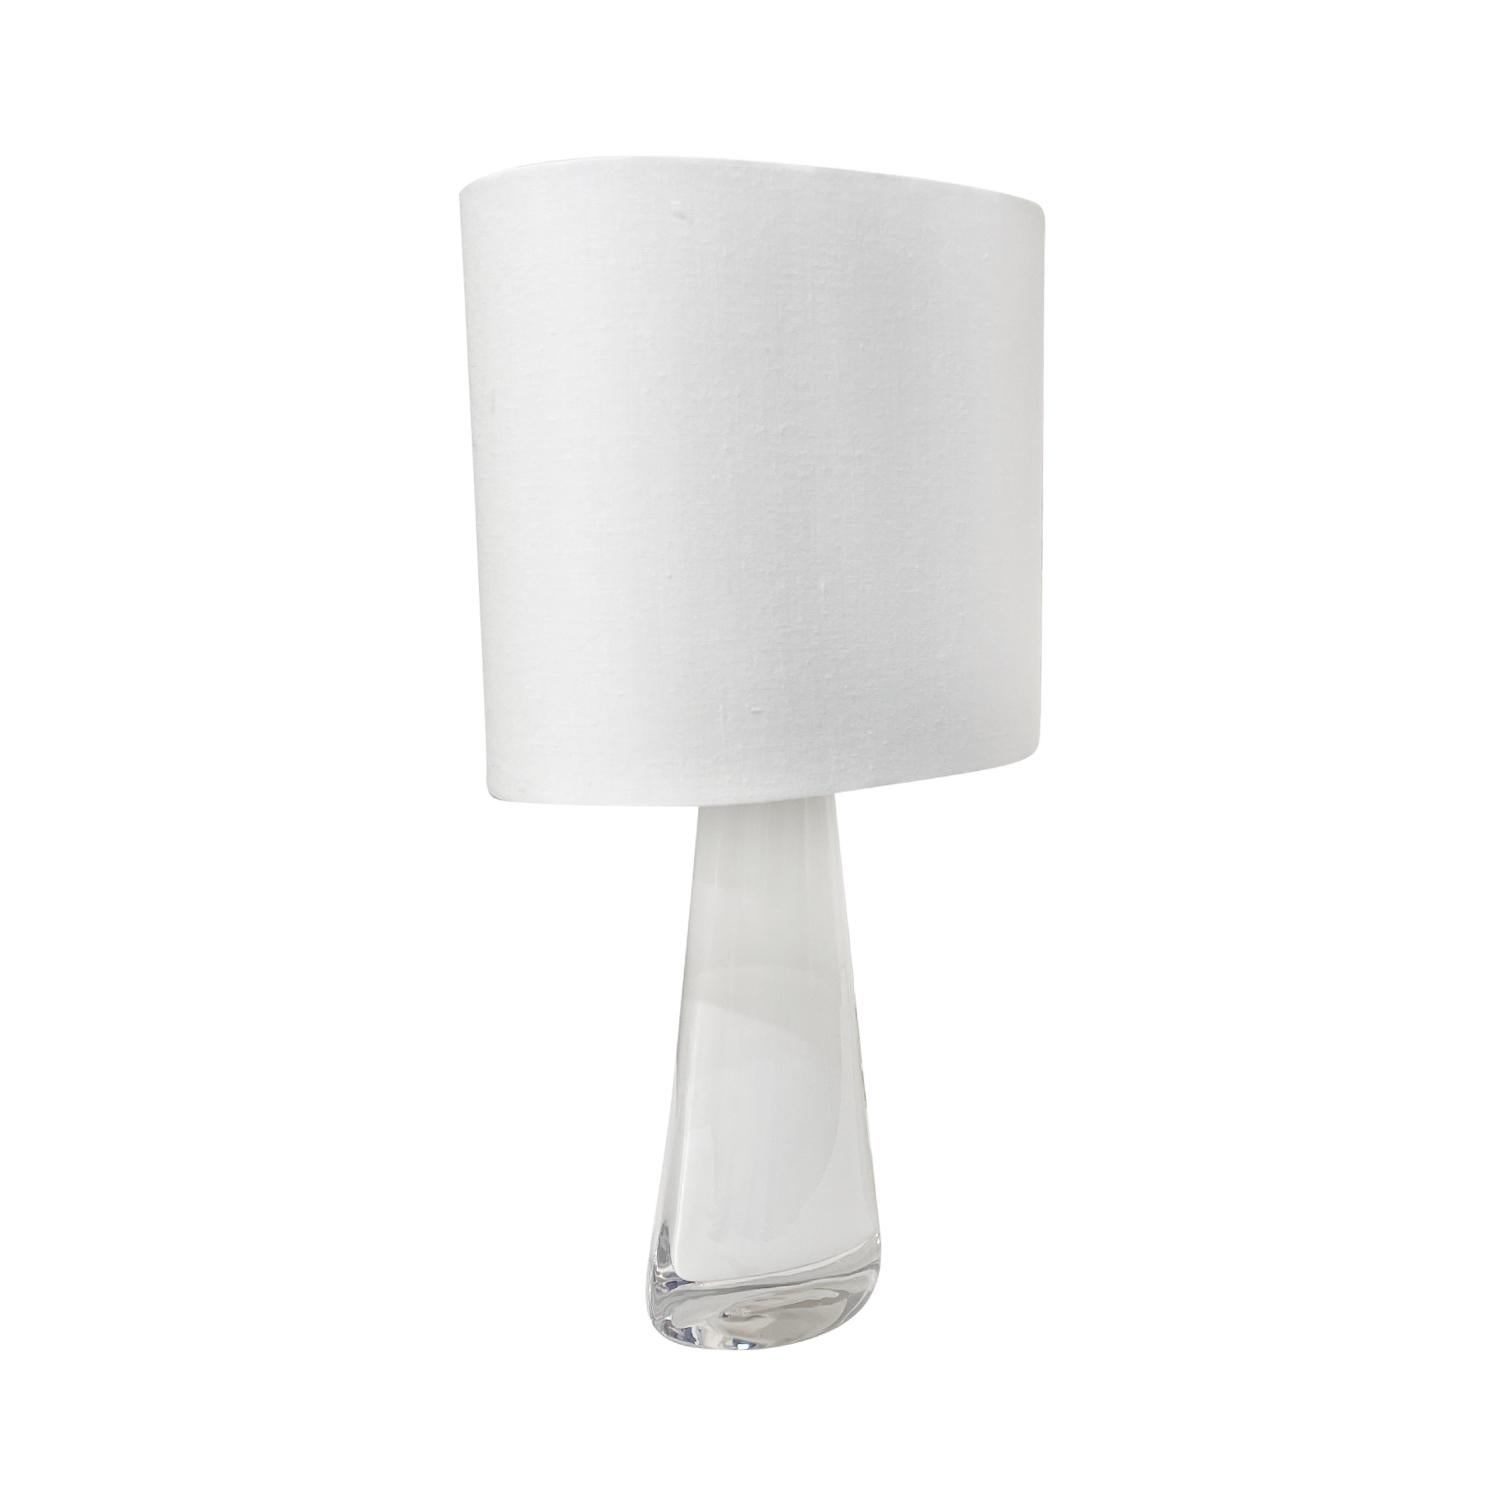 Lampe de table suédoise demi-ronde, de style moderne du milieu du siècle, avec un nouvel abat-jour blanc ovale, en verre soufflé à la main Orrefors, la poutre est rehaussée d'un anneau chromé, avec une douille à une lumière en bon état. Cette lampe